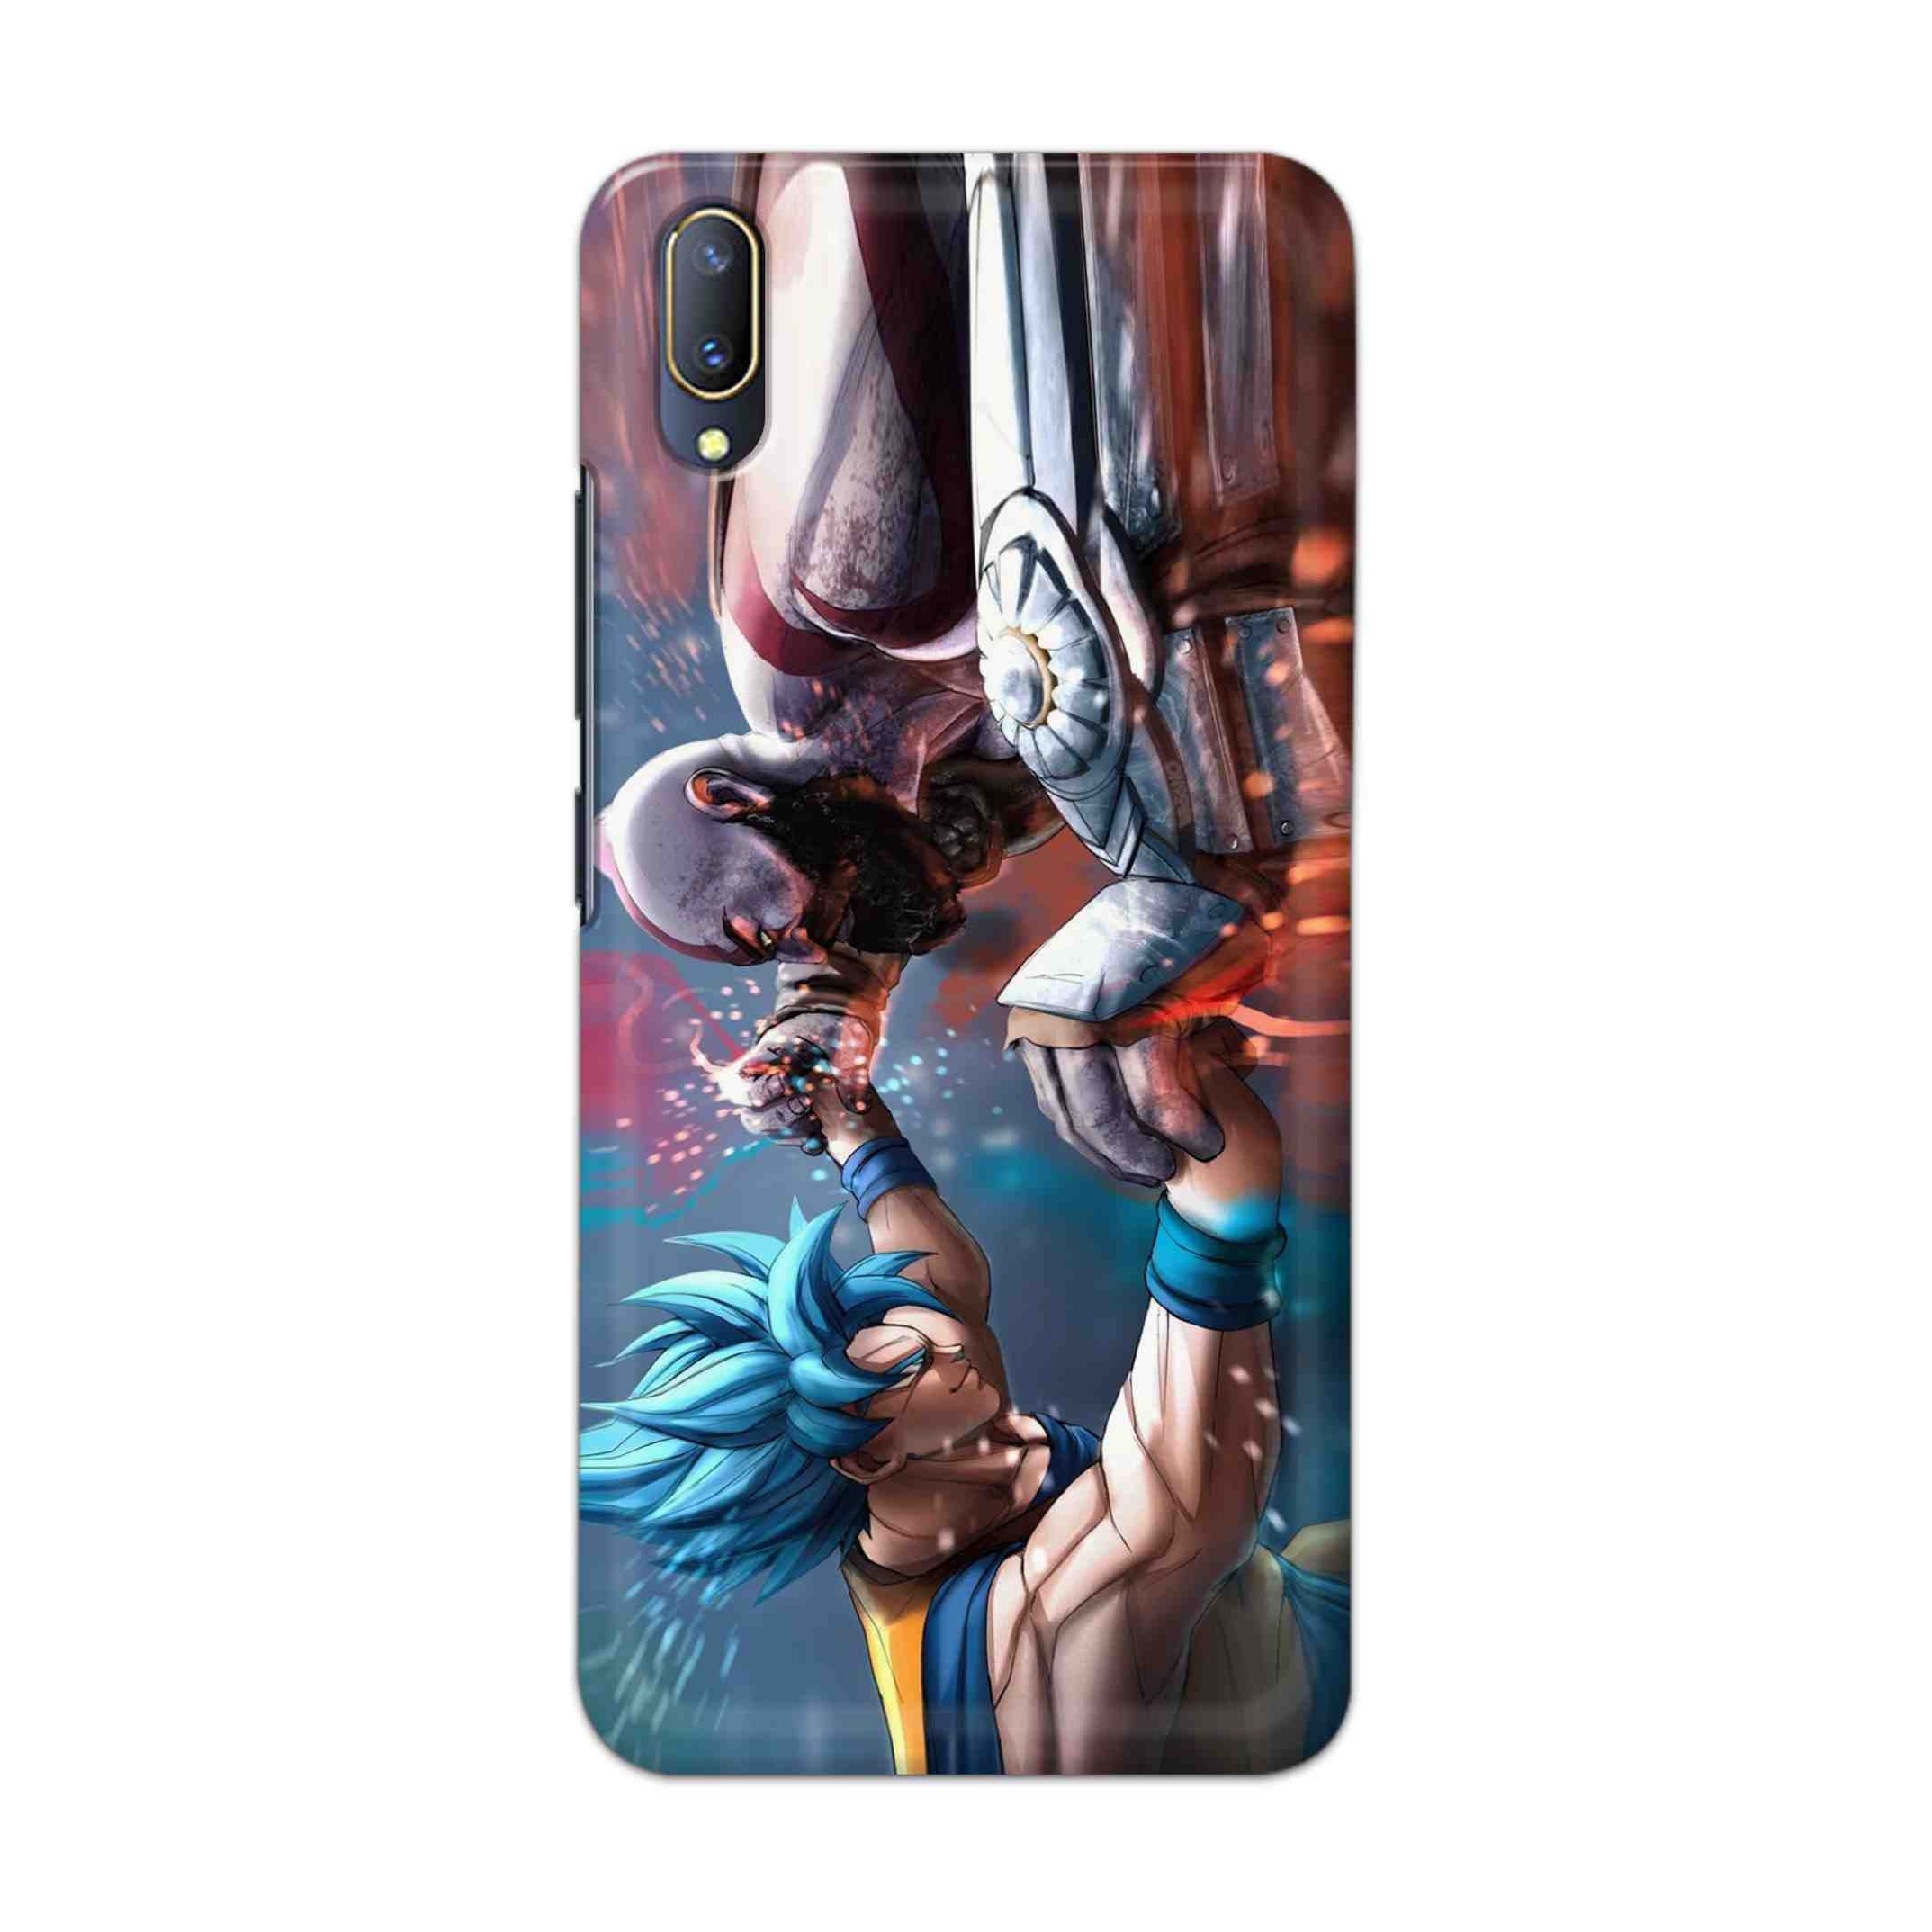 Buy Goku Vs Kratos Hard Back Mobile Phone Case Cover For V11 PRO Online